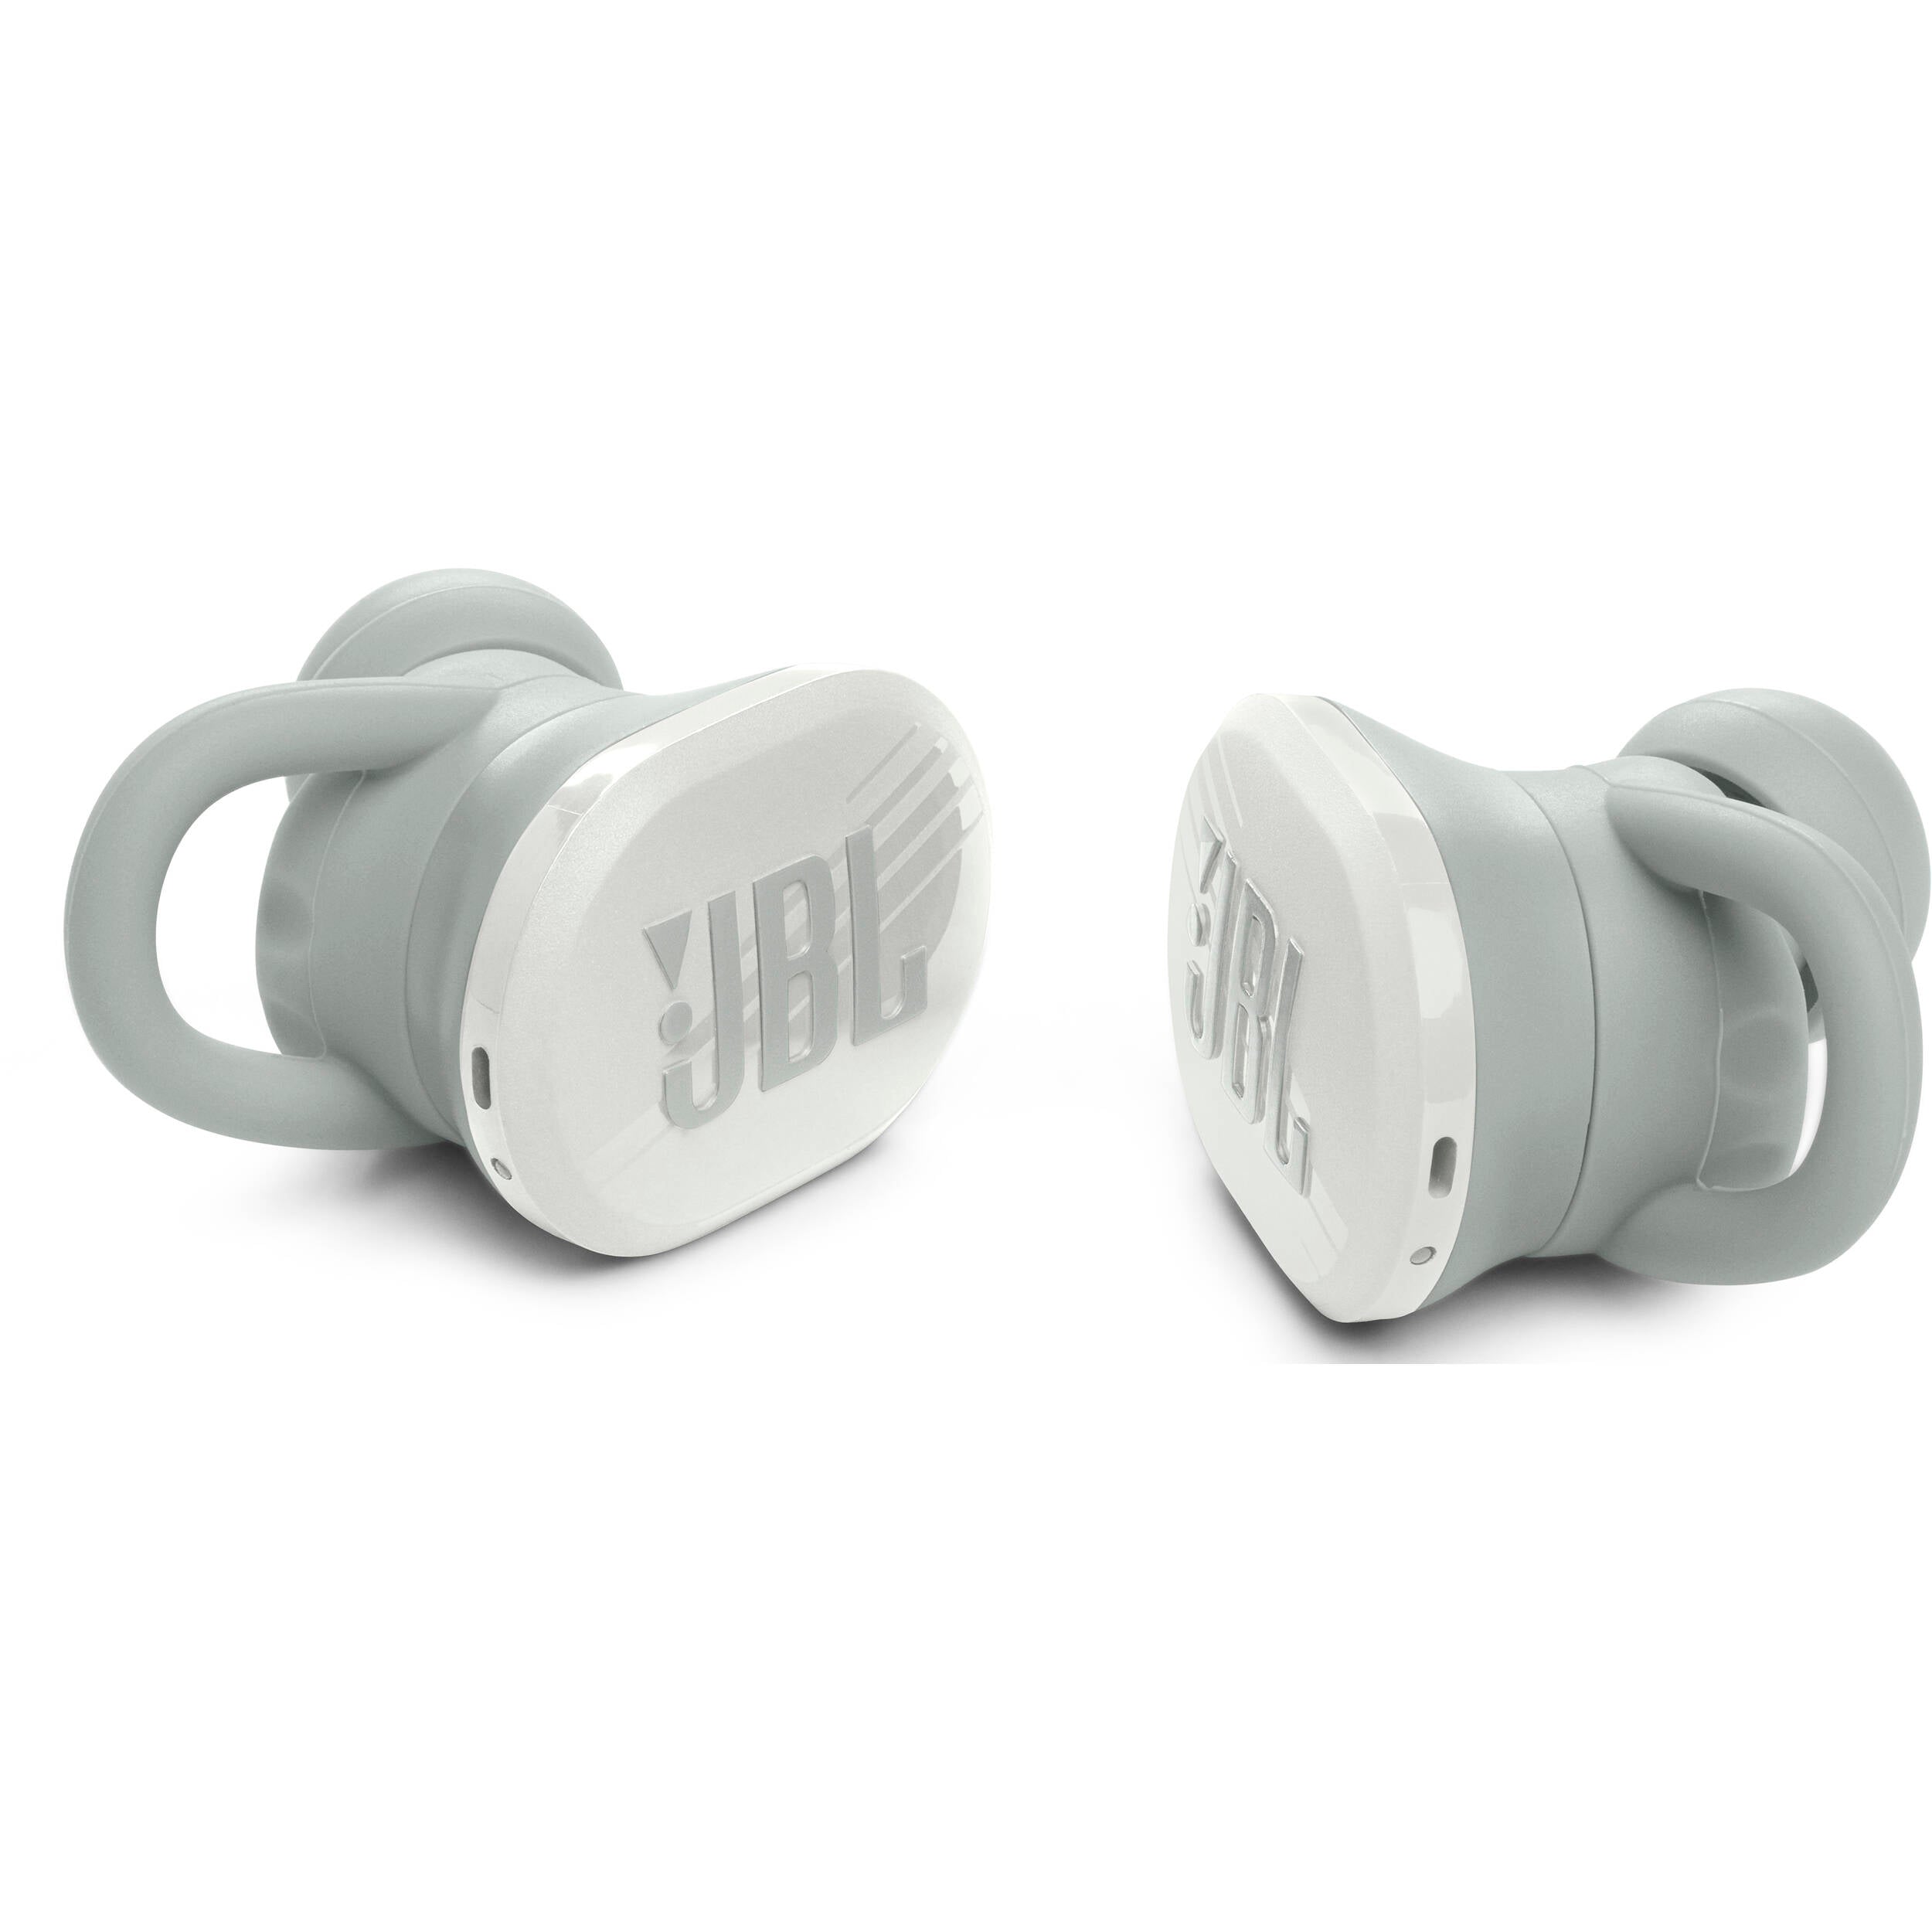 JBL JBLENDURACE Endurance Race Waterproof Wireless Sport Earbuds - Certified Refurbished